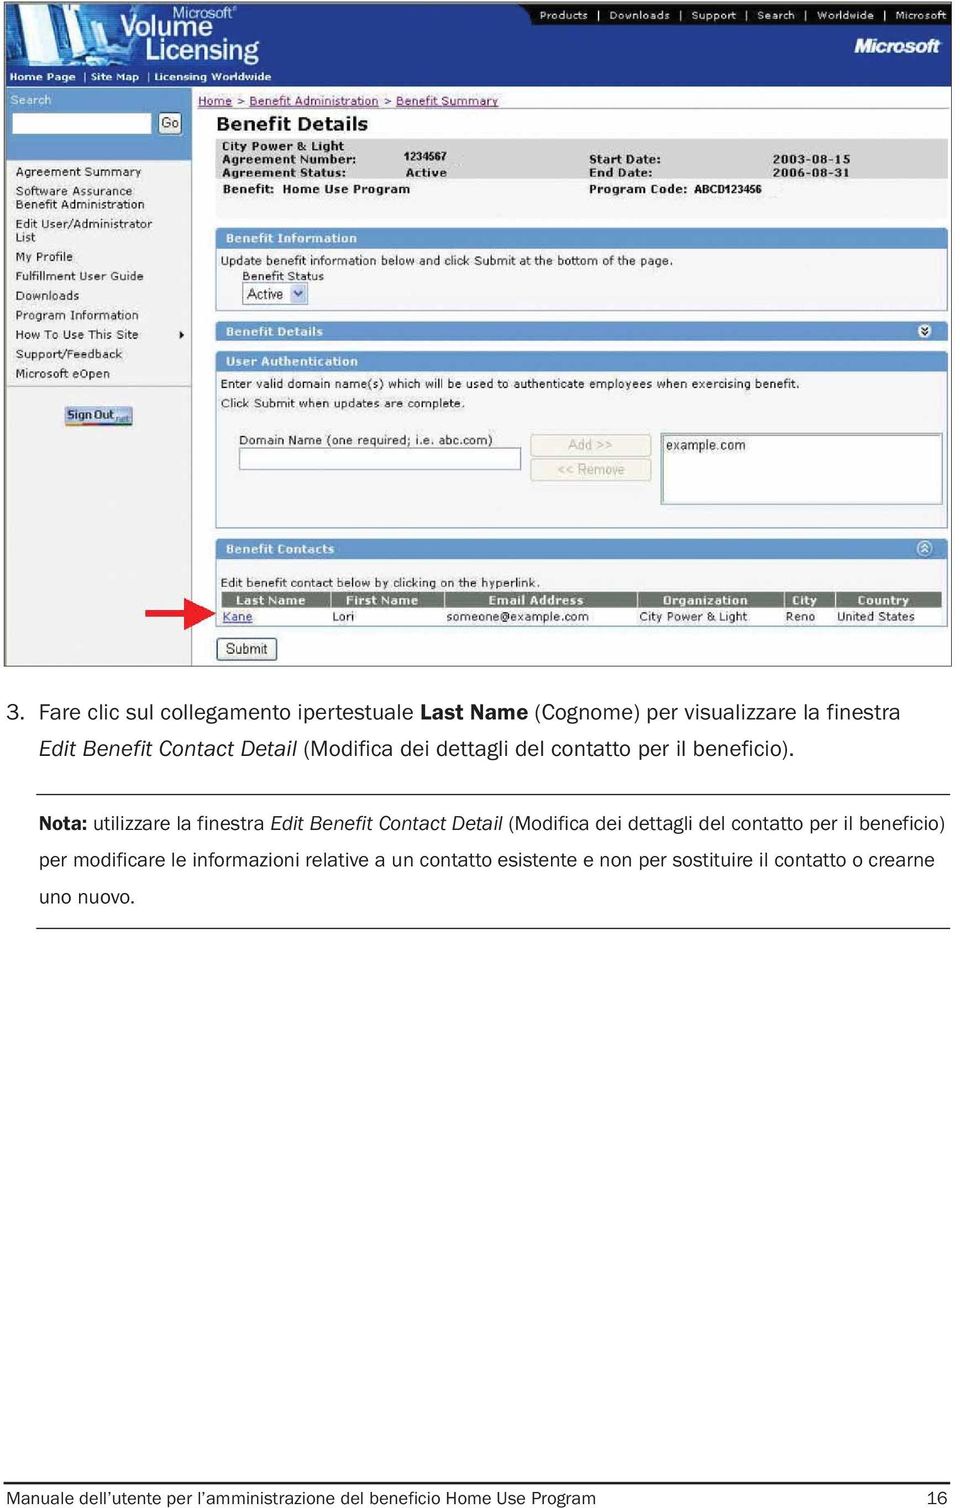 Nota: utilizzare la finestra Edit Benefit Contact Detail (Modifica dei dettagli del contatto per il